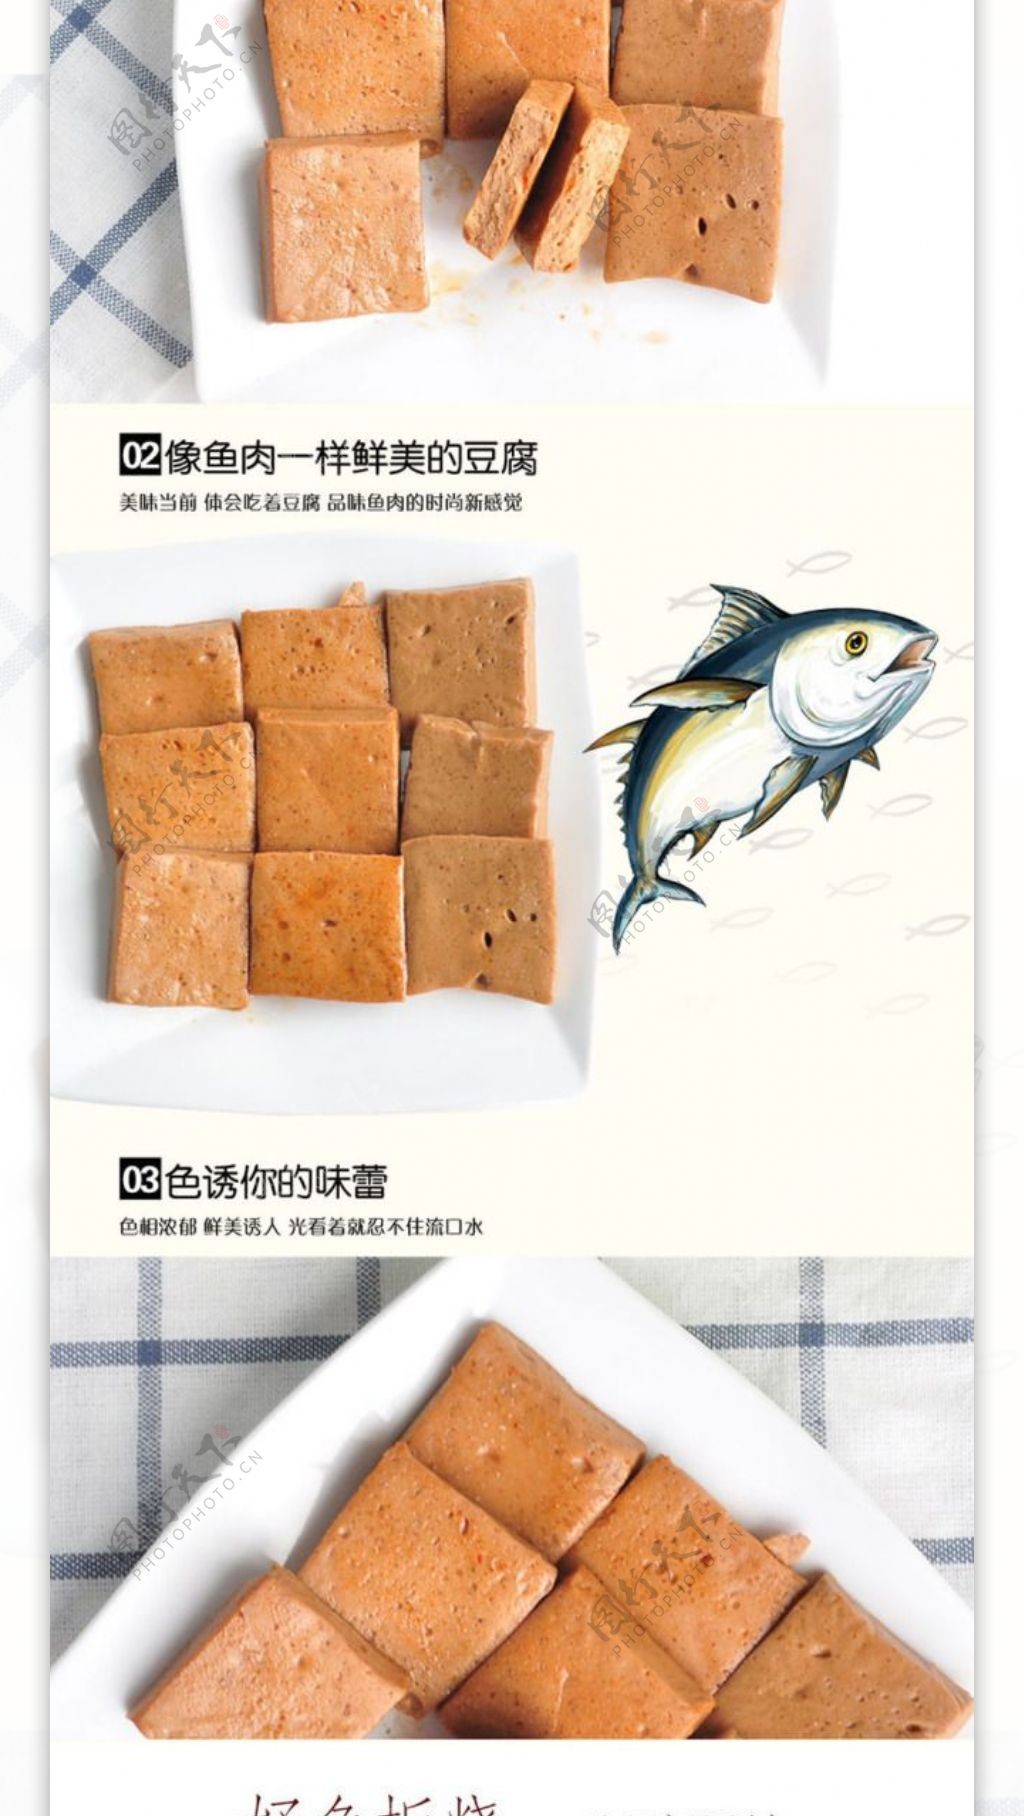 渔家翁鱼板烧鱼豆腐宝贝详情图文